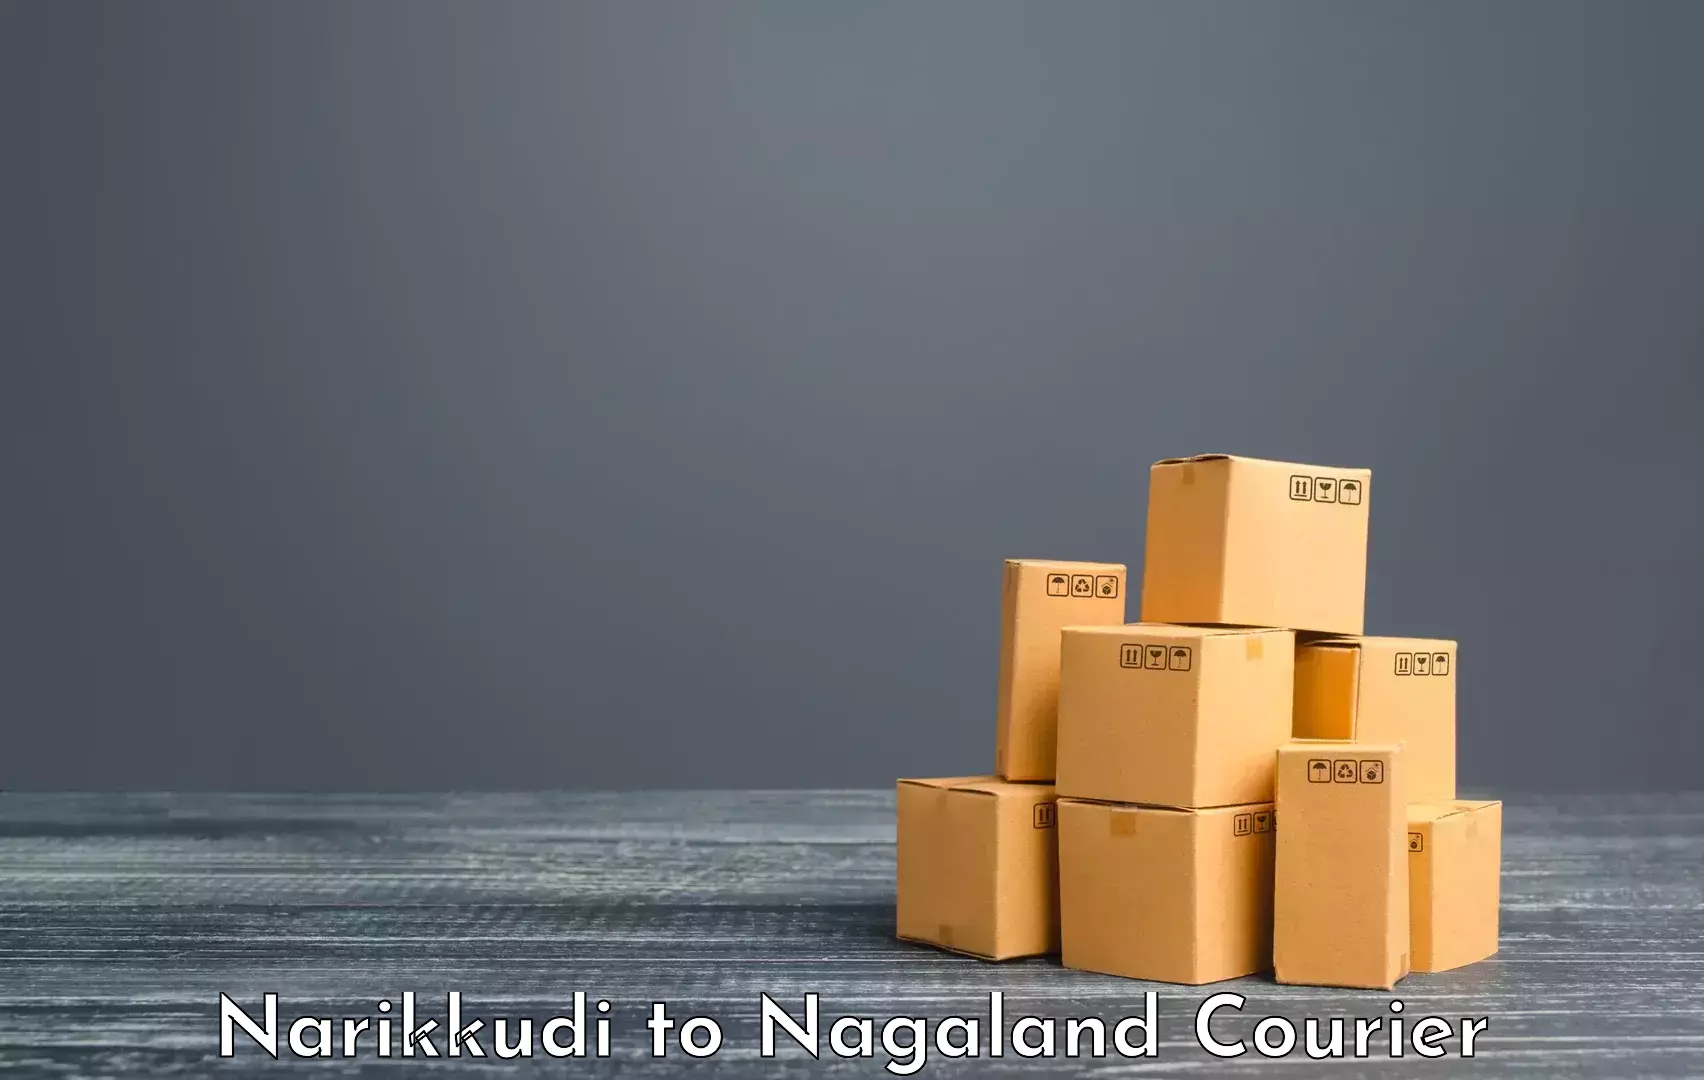 Luggage transport operations Narikkudi to Longleng